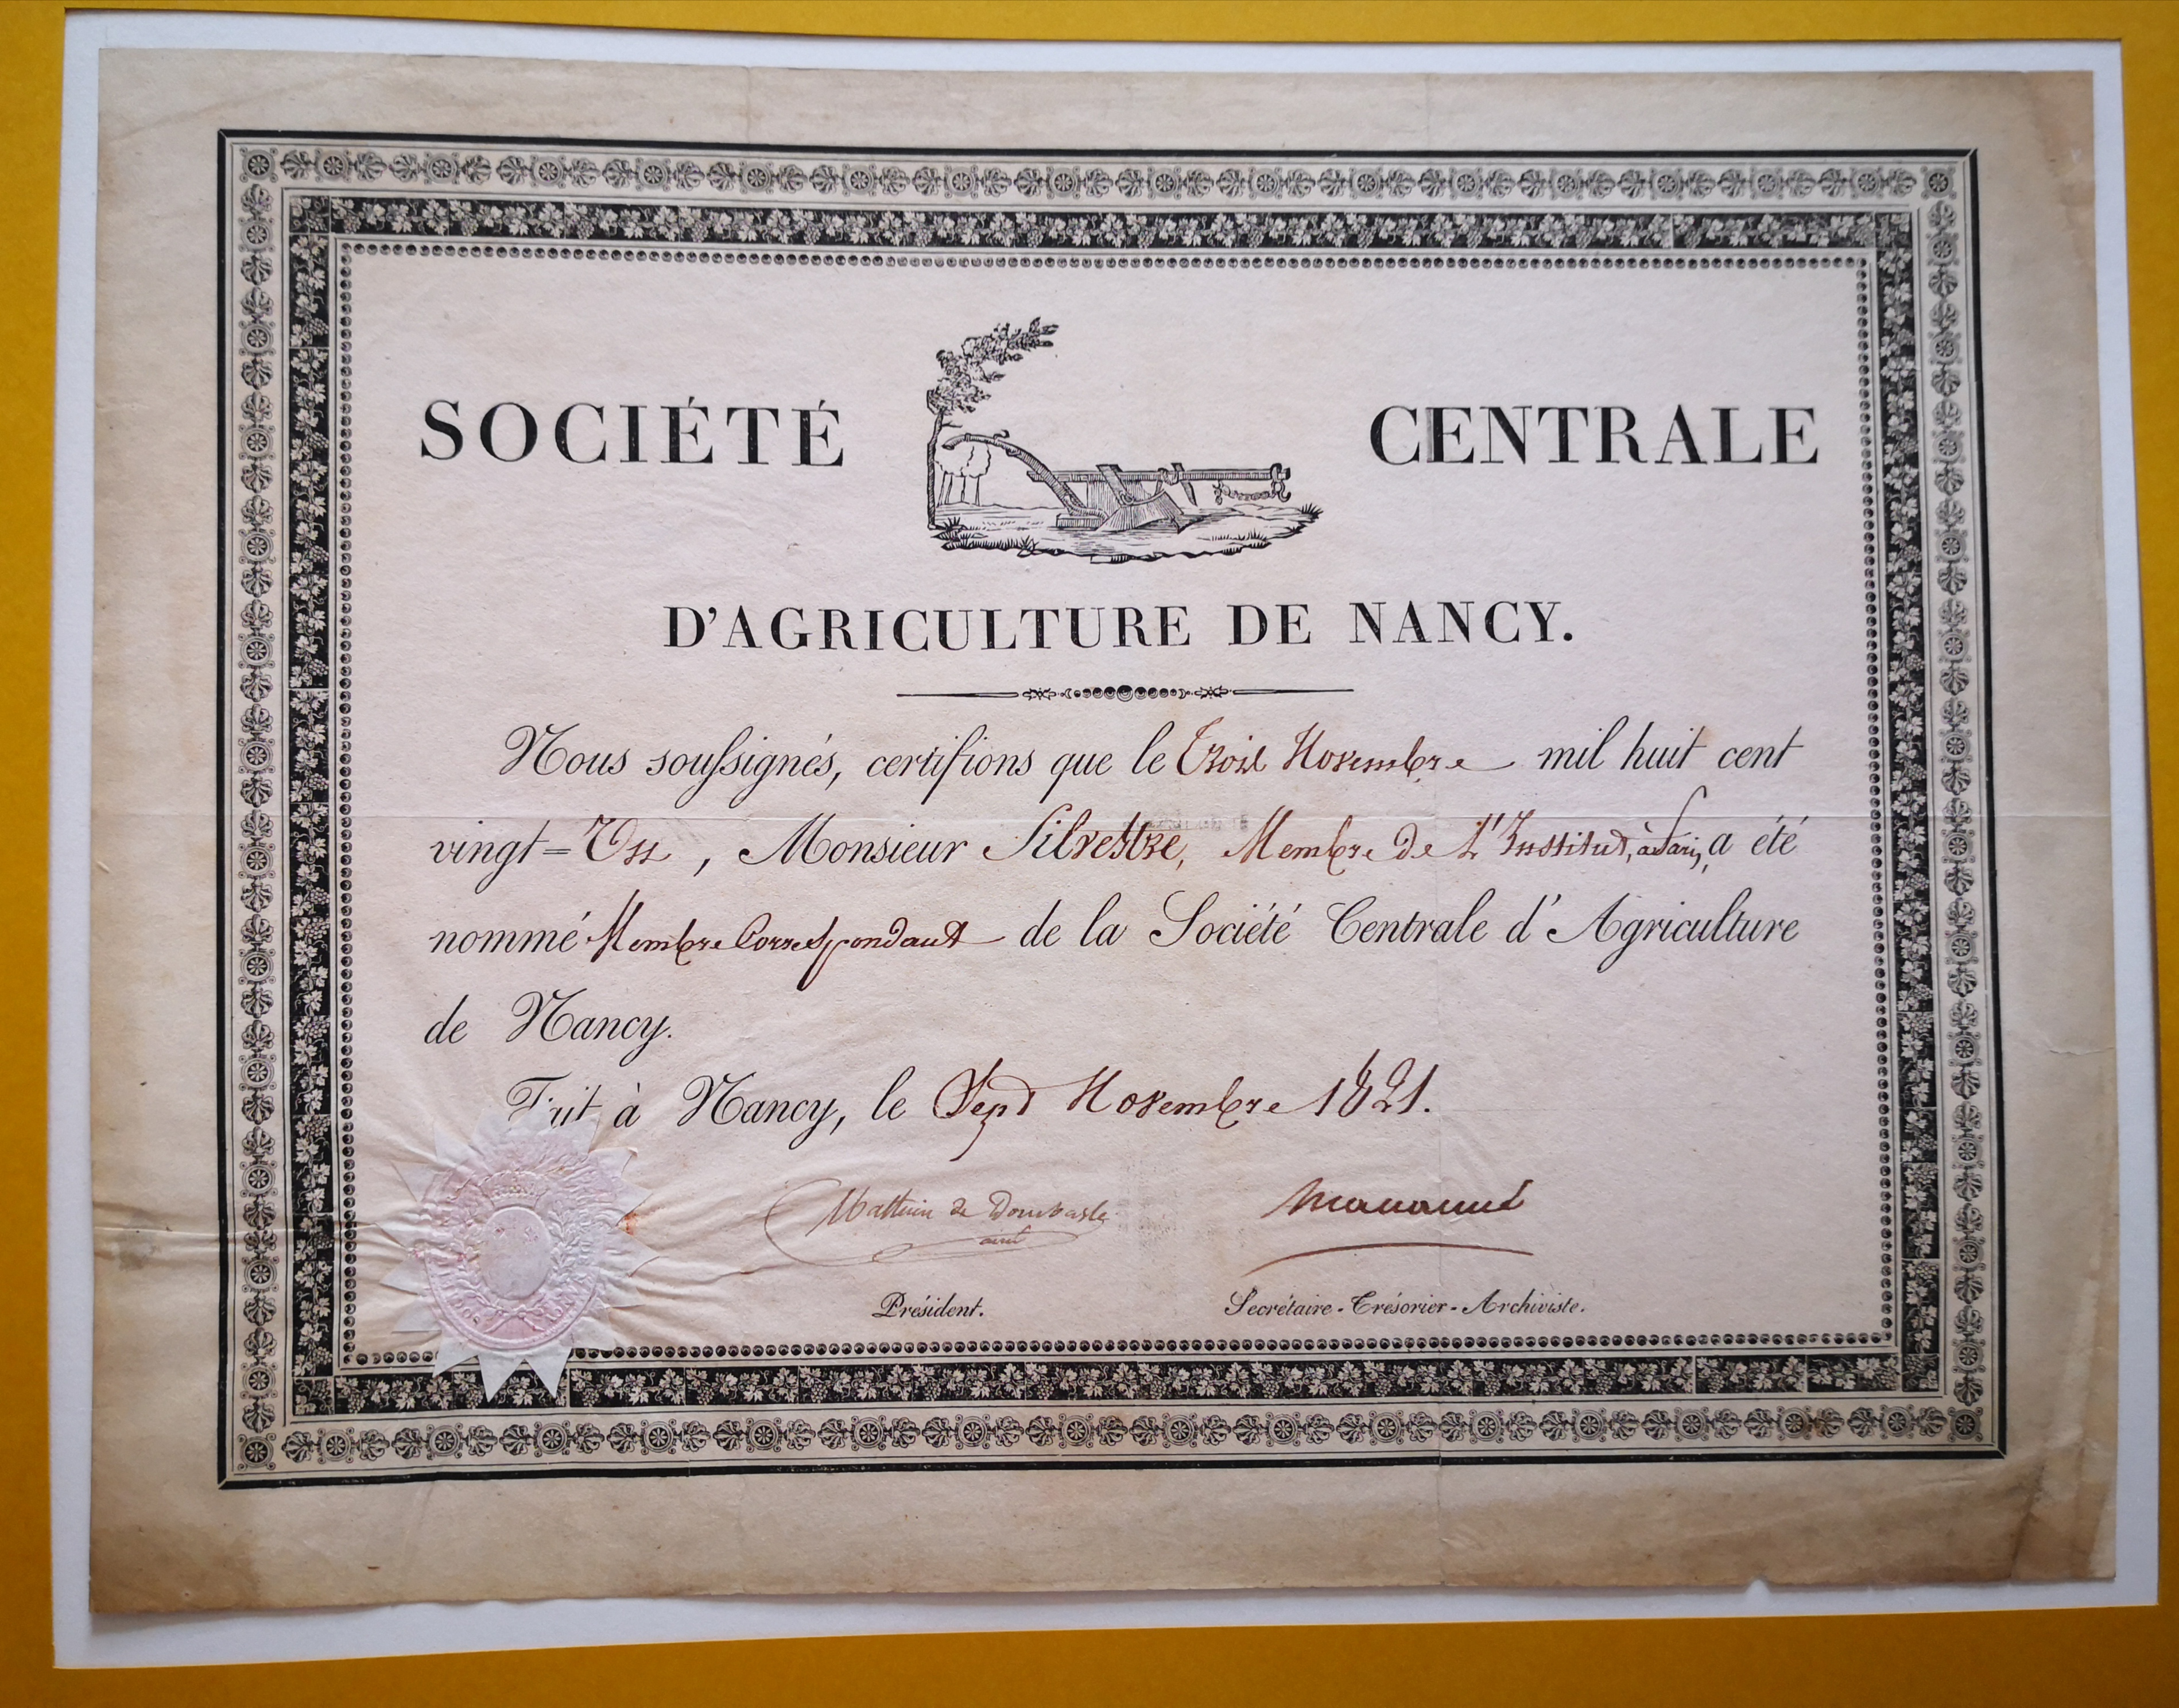  Diplôme de membre correspondant de la Société Centrale d'Agriculture de Nancy décerné à Augustin-François de Silvestre - Document 1